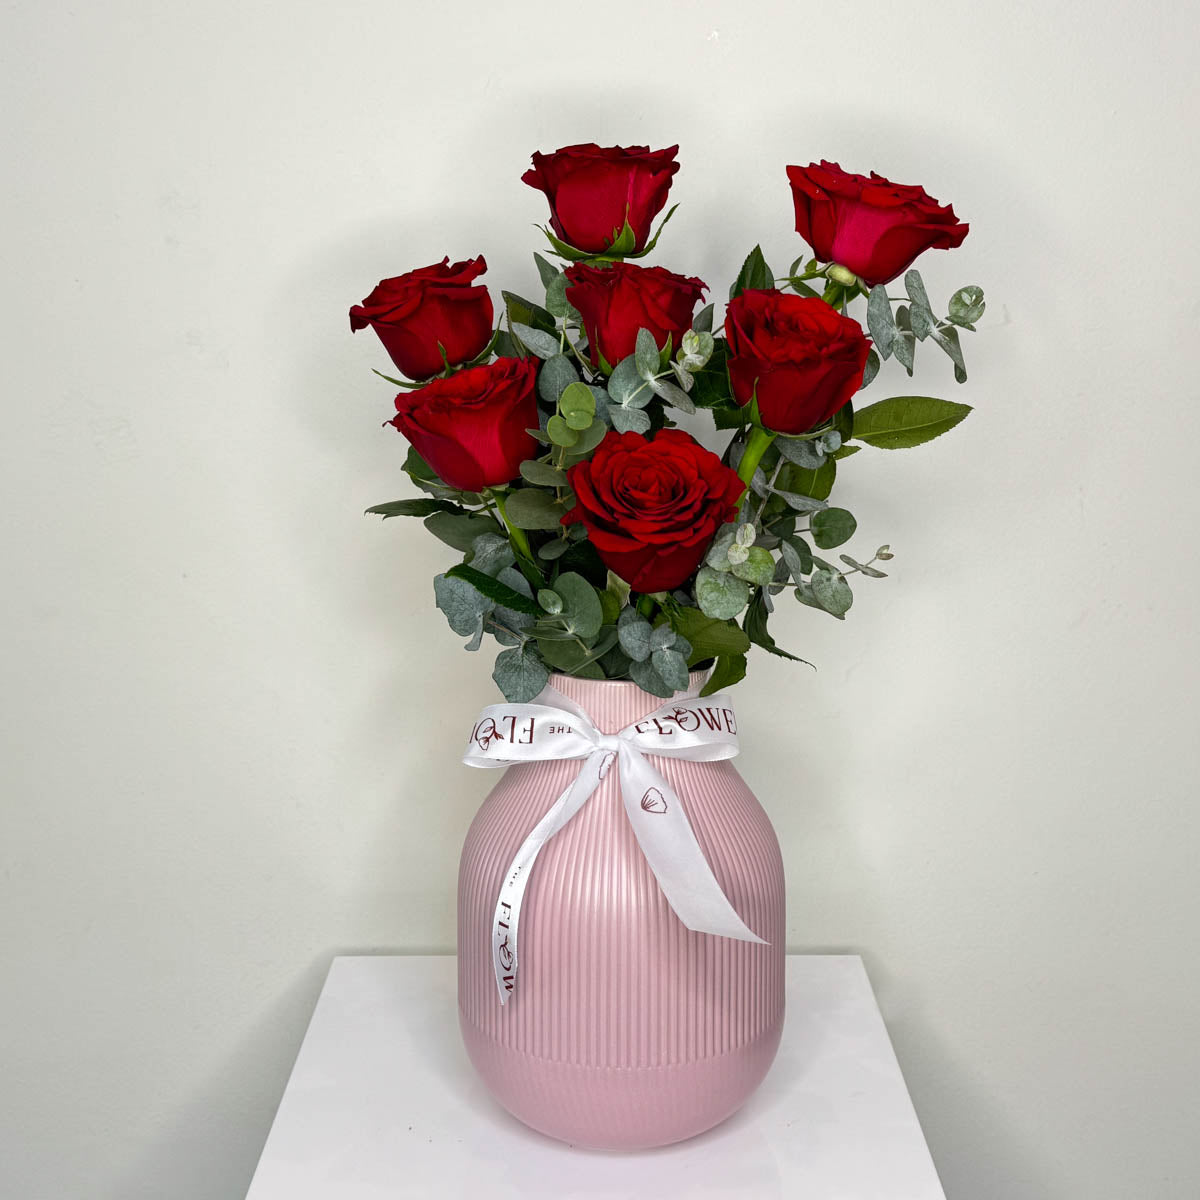 Ceramic Vase With Roses